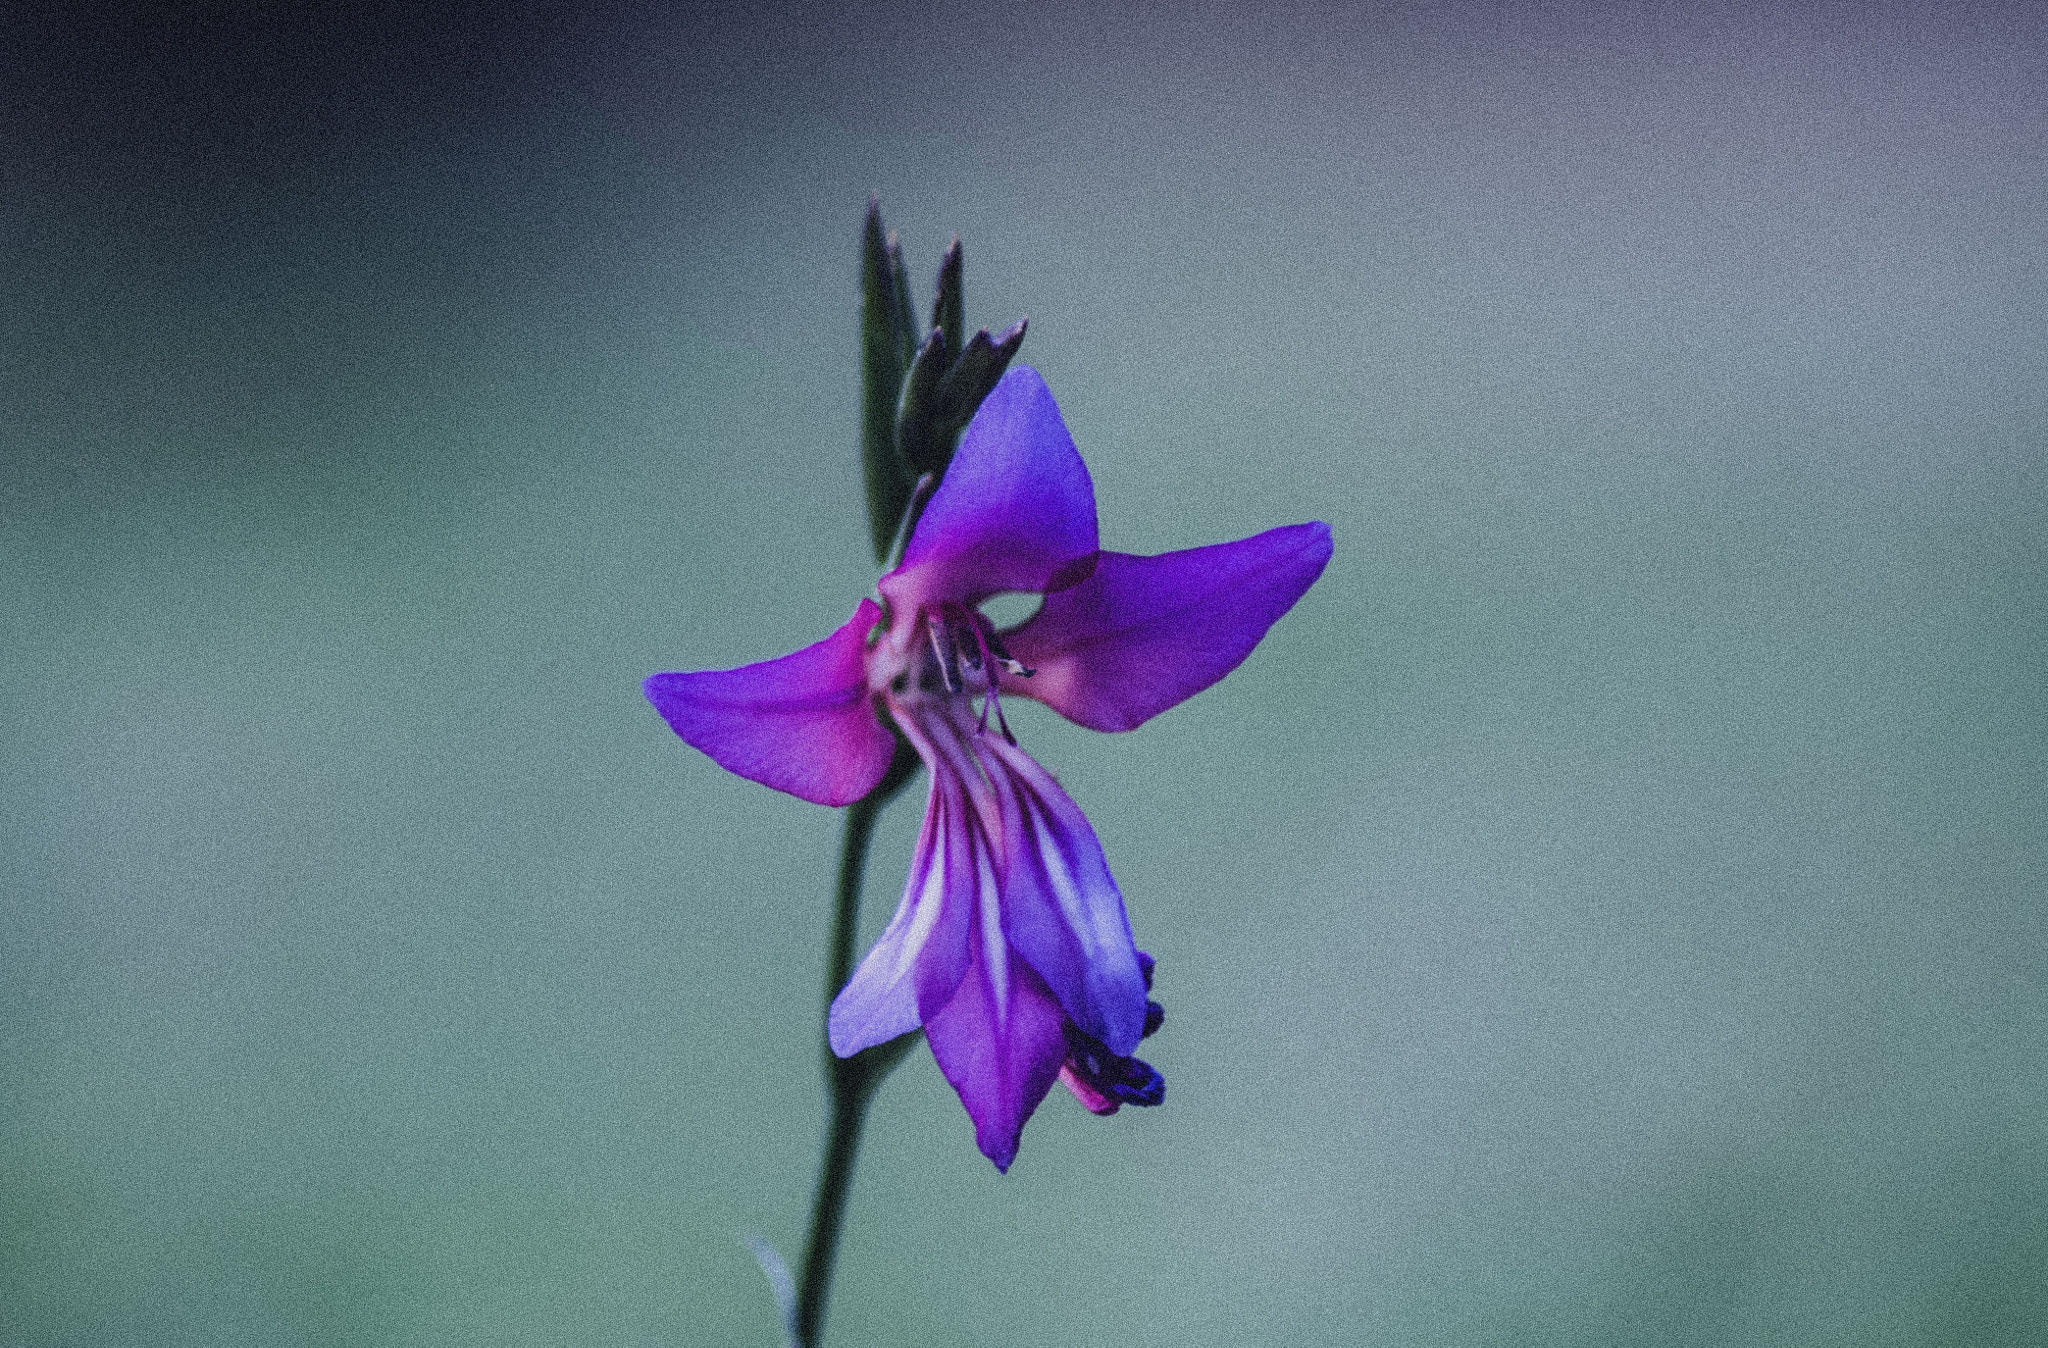 Pentax K-x + Tamron AF 70-300mm F4-5.6 Di LD Macro sample photo. Gladiolus illyricus photography